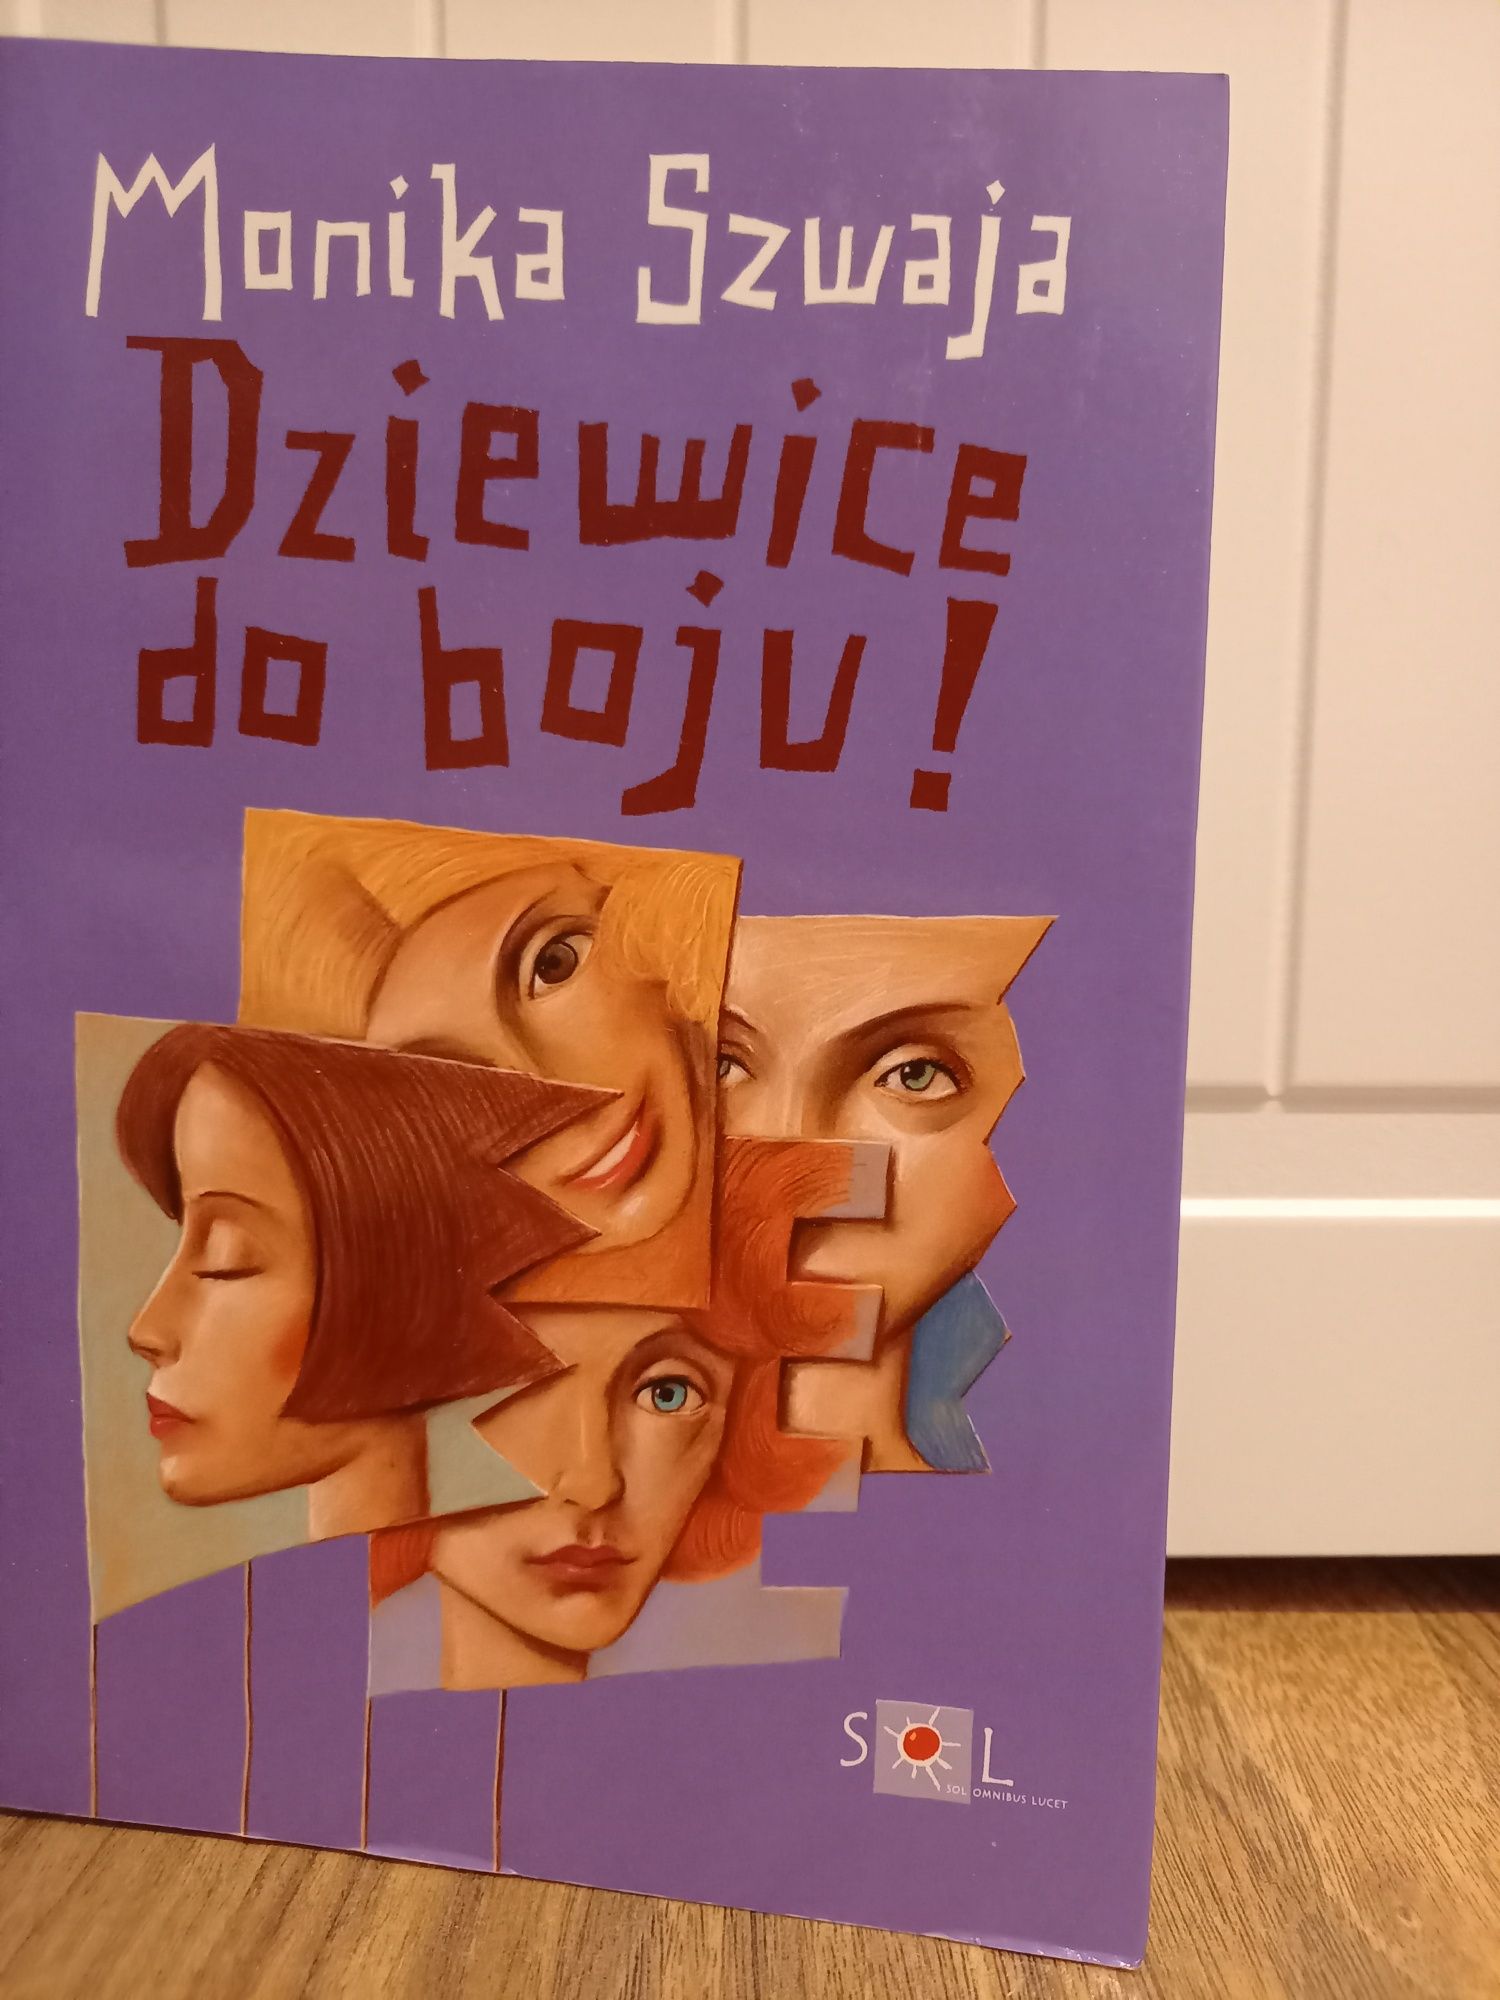 Książka "Dziewice do boju" Monika Szwaja